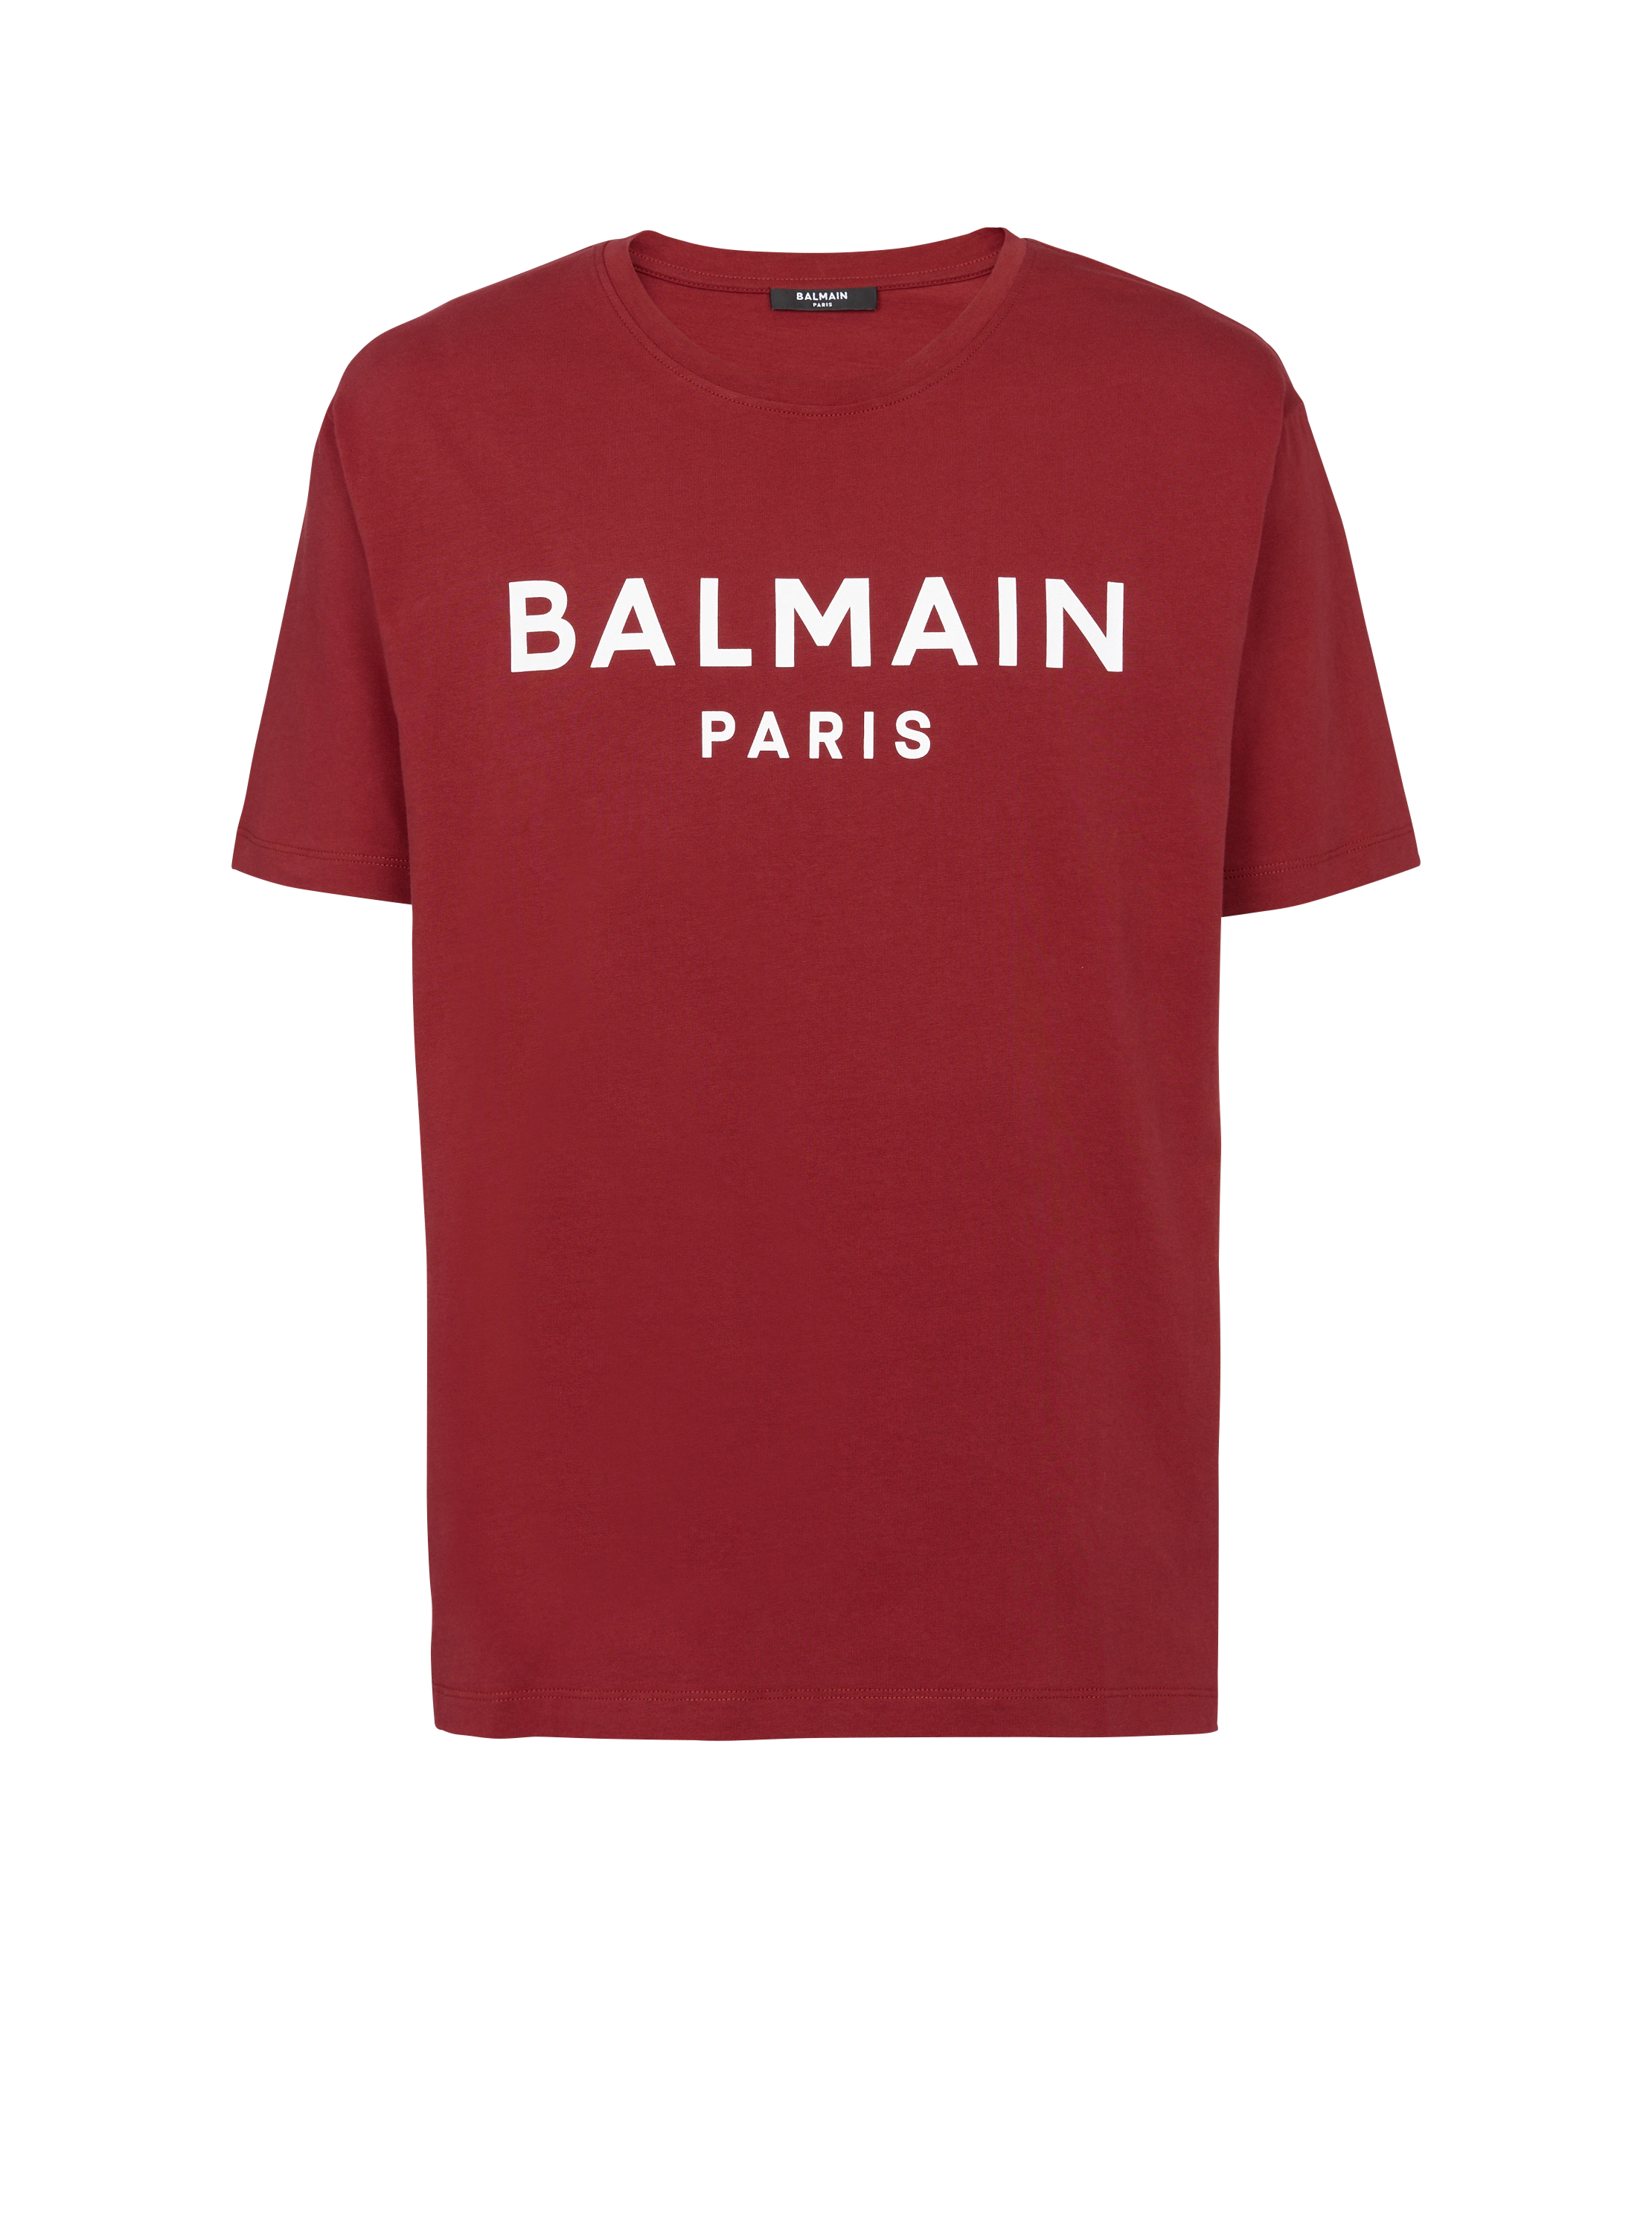 Paris T-shirt - Men | BALMAIN